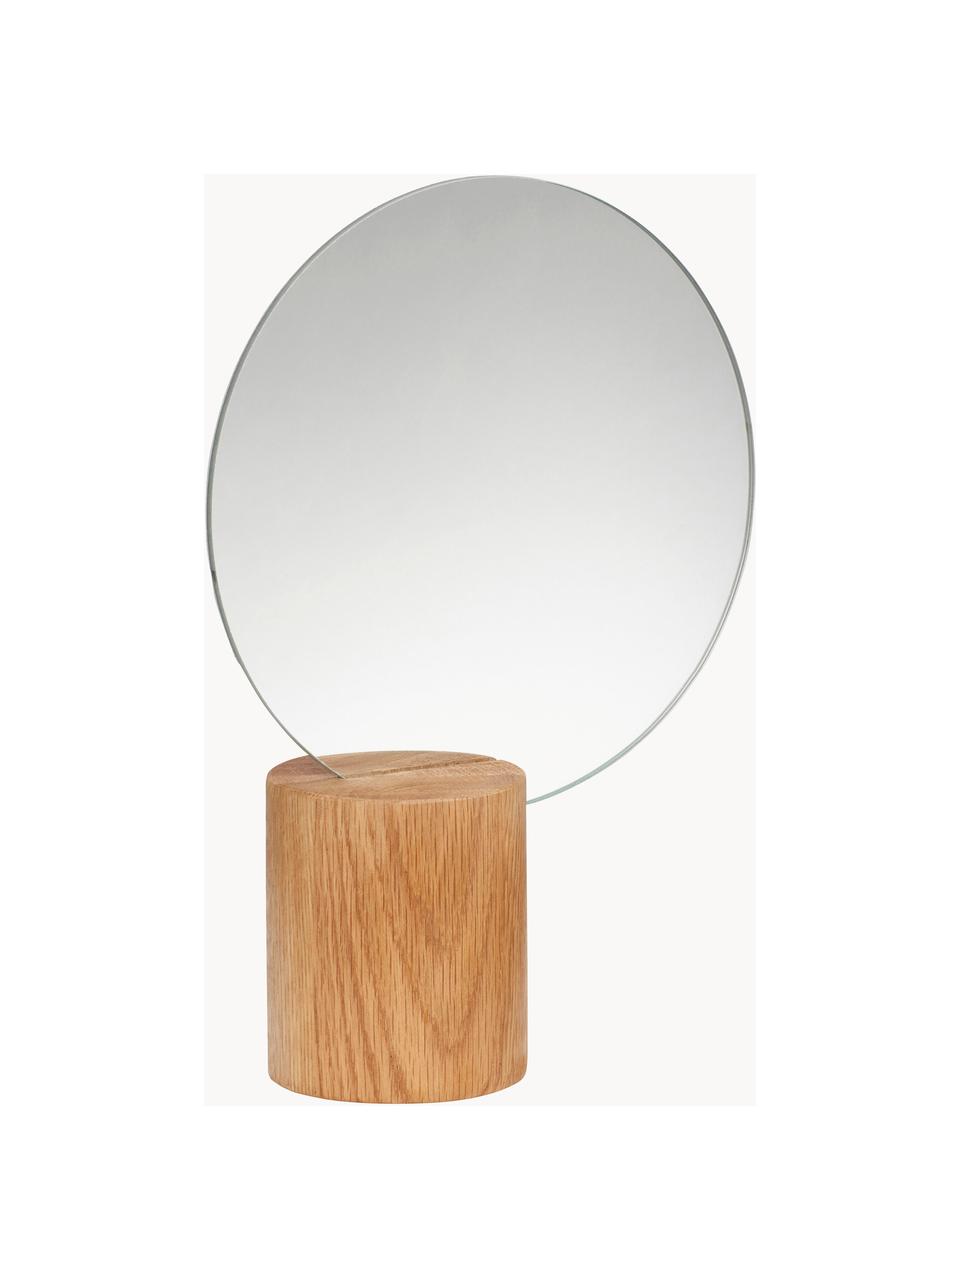 Runder Dekospiegel Edge mit Eichenholzfuß, Fuß: Eichenholz, Spiegelfläche: Spiegelglas Dieses Produk, Eichenholz, Ø 21 x H 28 cm